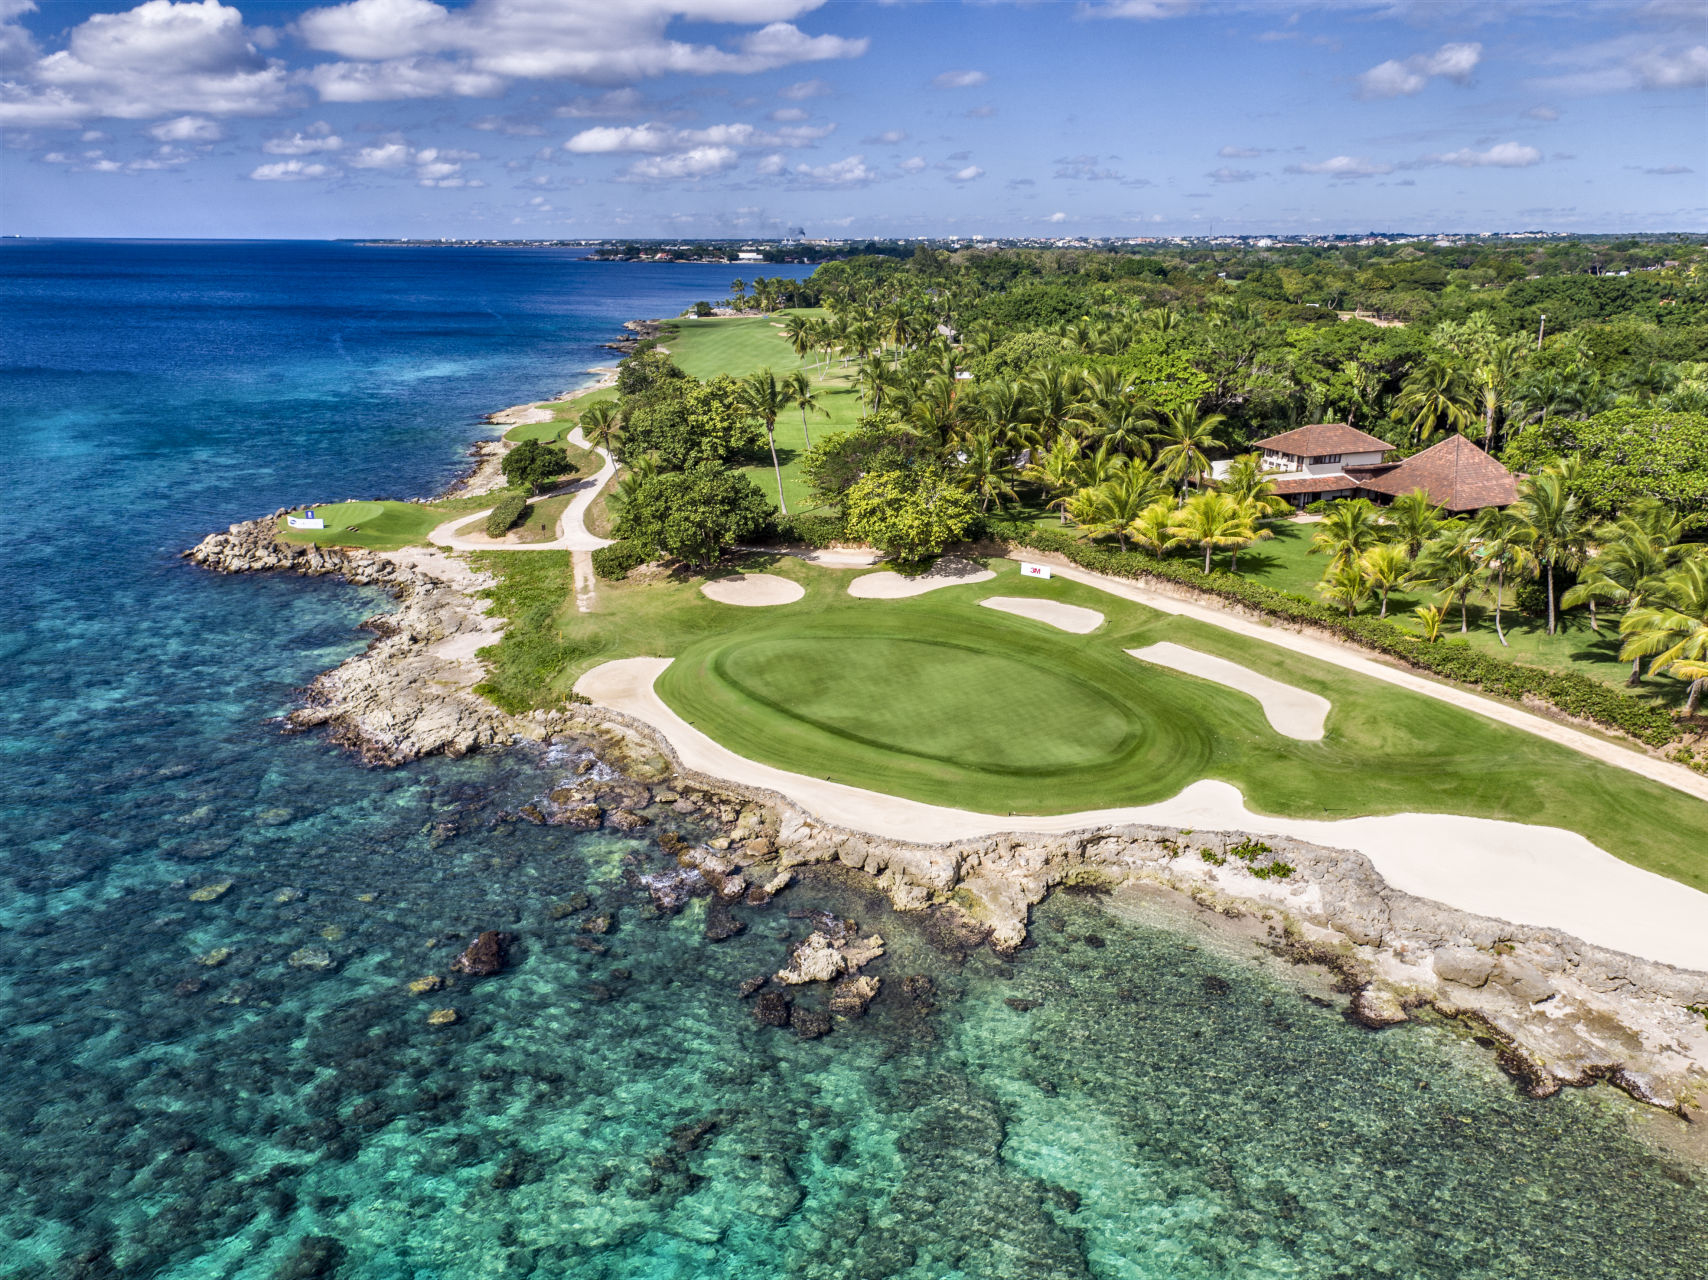 Casa de Campo  Dominican Republic Luxury Golf Resort